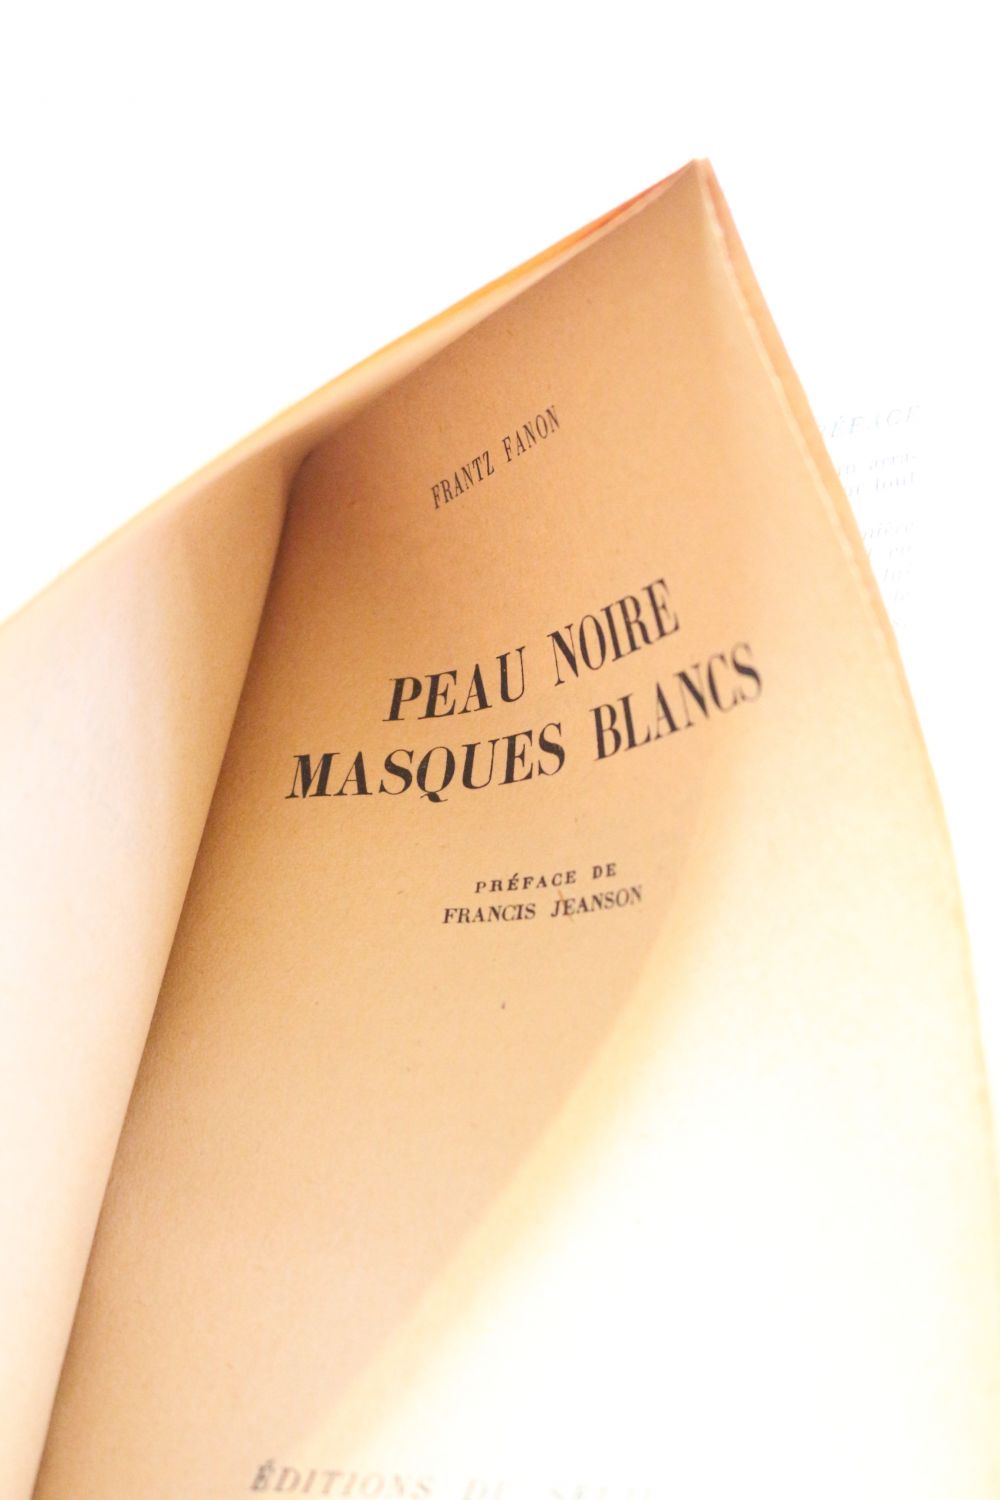 FANON : Peau noire et masques blancs - First edition 